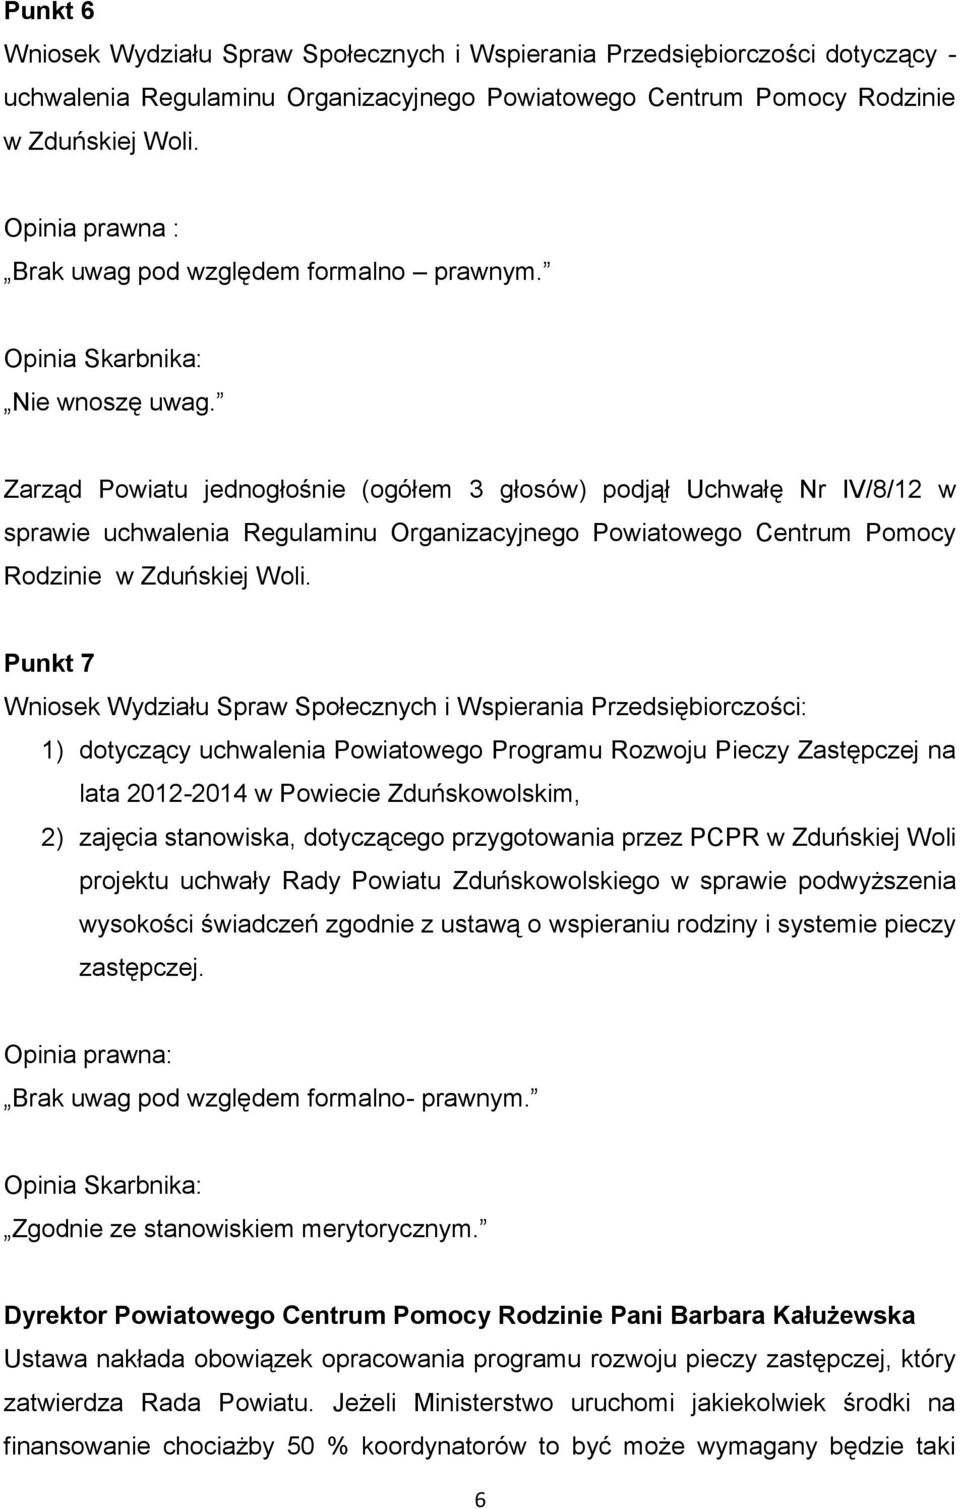 Zarząd Powiatu jednogłośnie (ogółem 3 głosów) podjął Uchwałę Nr IV/8/12 w sprawie uchwalenia Regulaminu Organizacyjnego Powiatowego Centrum Pomocy Rodzinie w Zduńskiej Woli.